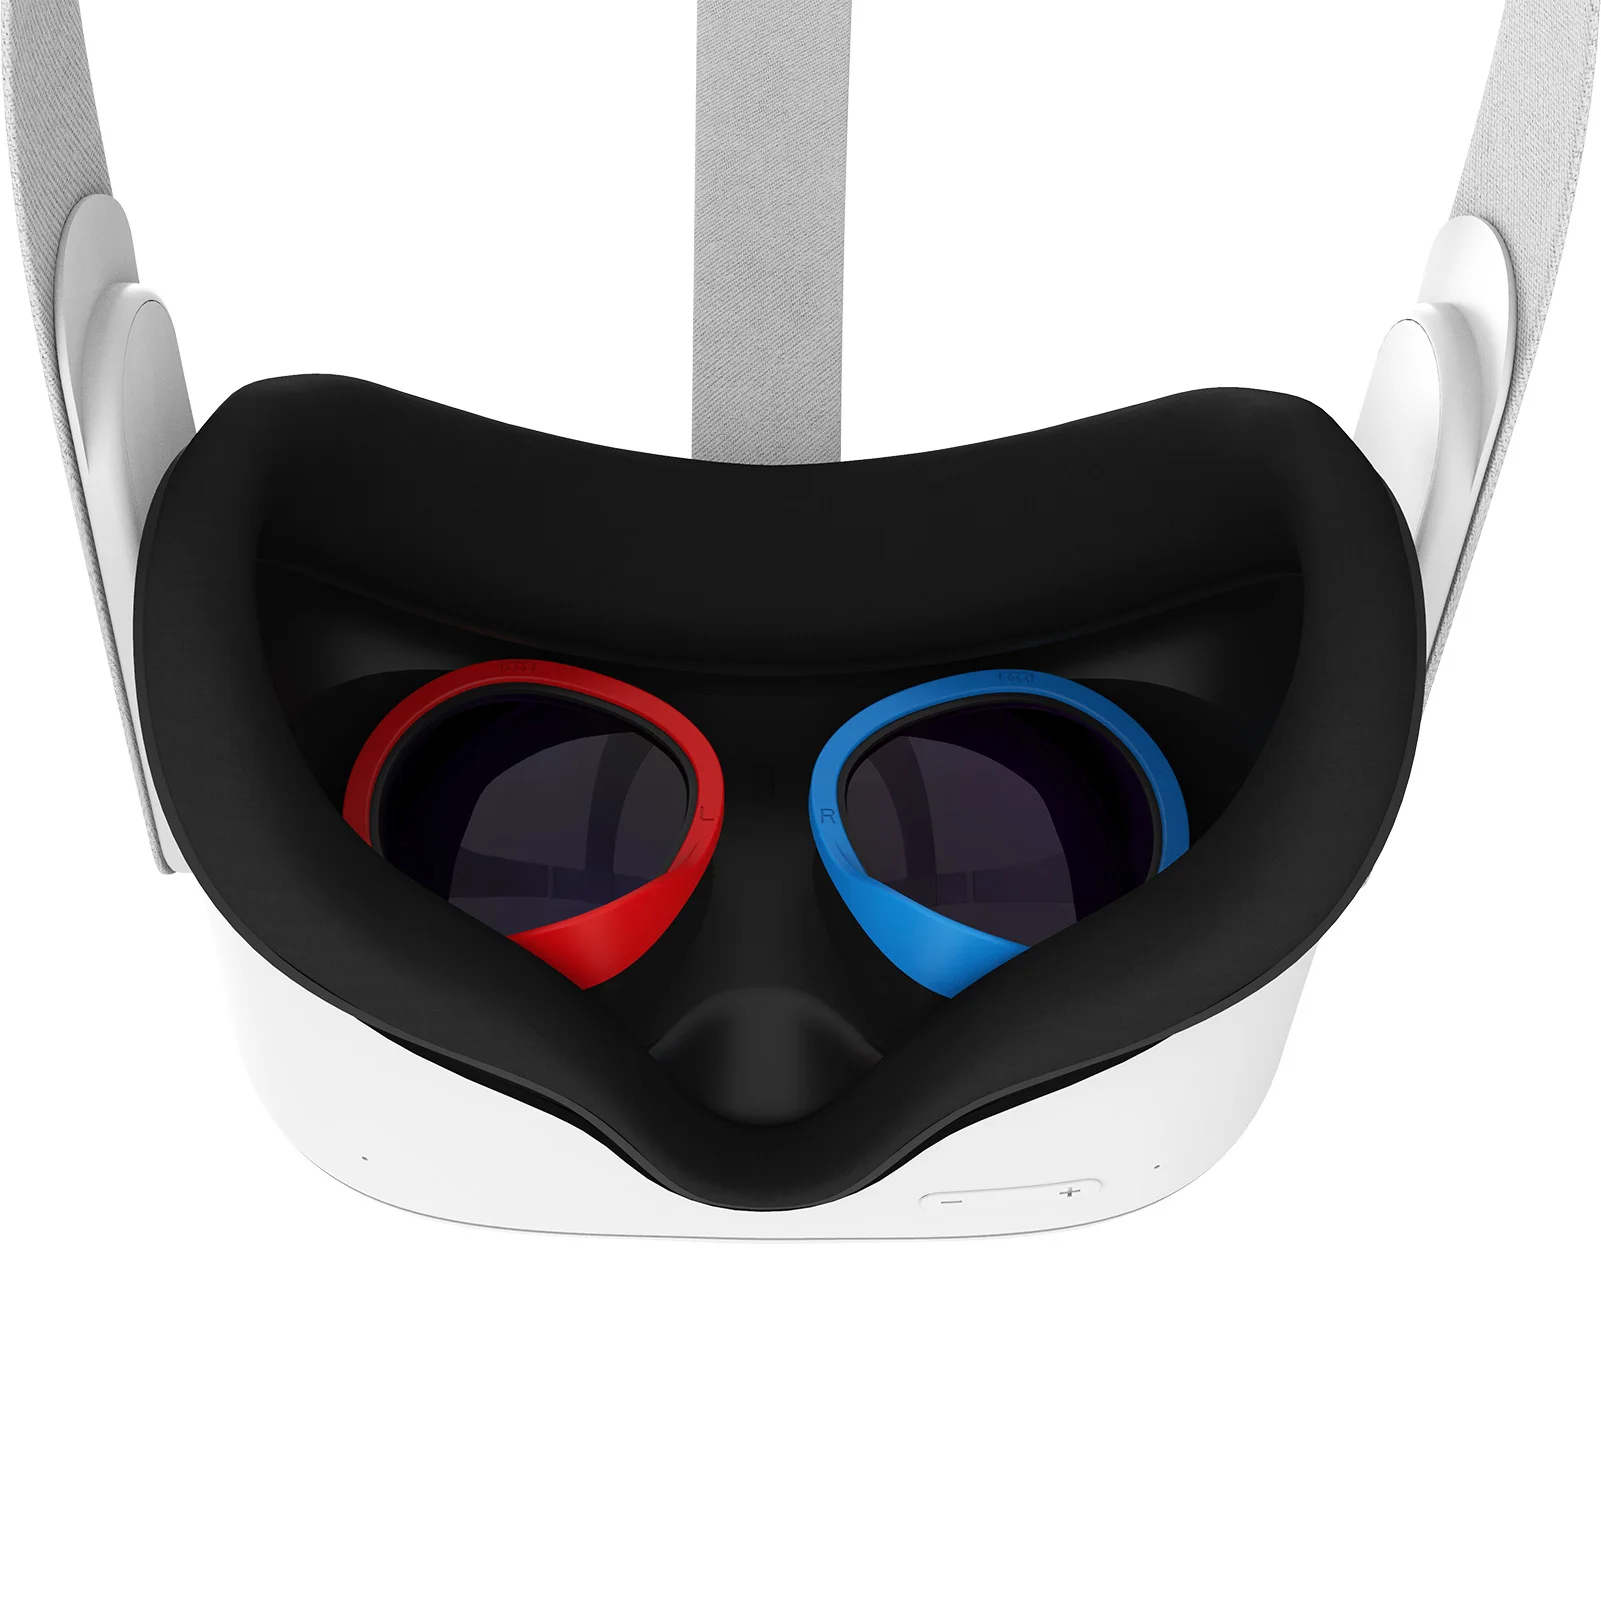 VR Glasses Lens Anti-Scratch Ring Protecting Myopia Preventing Light-Leaking VR Headset Lens for Oculus Quest 2/Quest/Rift S/Go			                  VR Glasses Lens Anti-Scratch Ring Protecting Myopia Preventing Light-Leaking VR Headset Lens for Oculus Quest 2/Quest/Rift S/Go